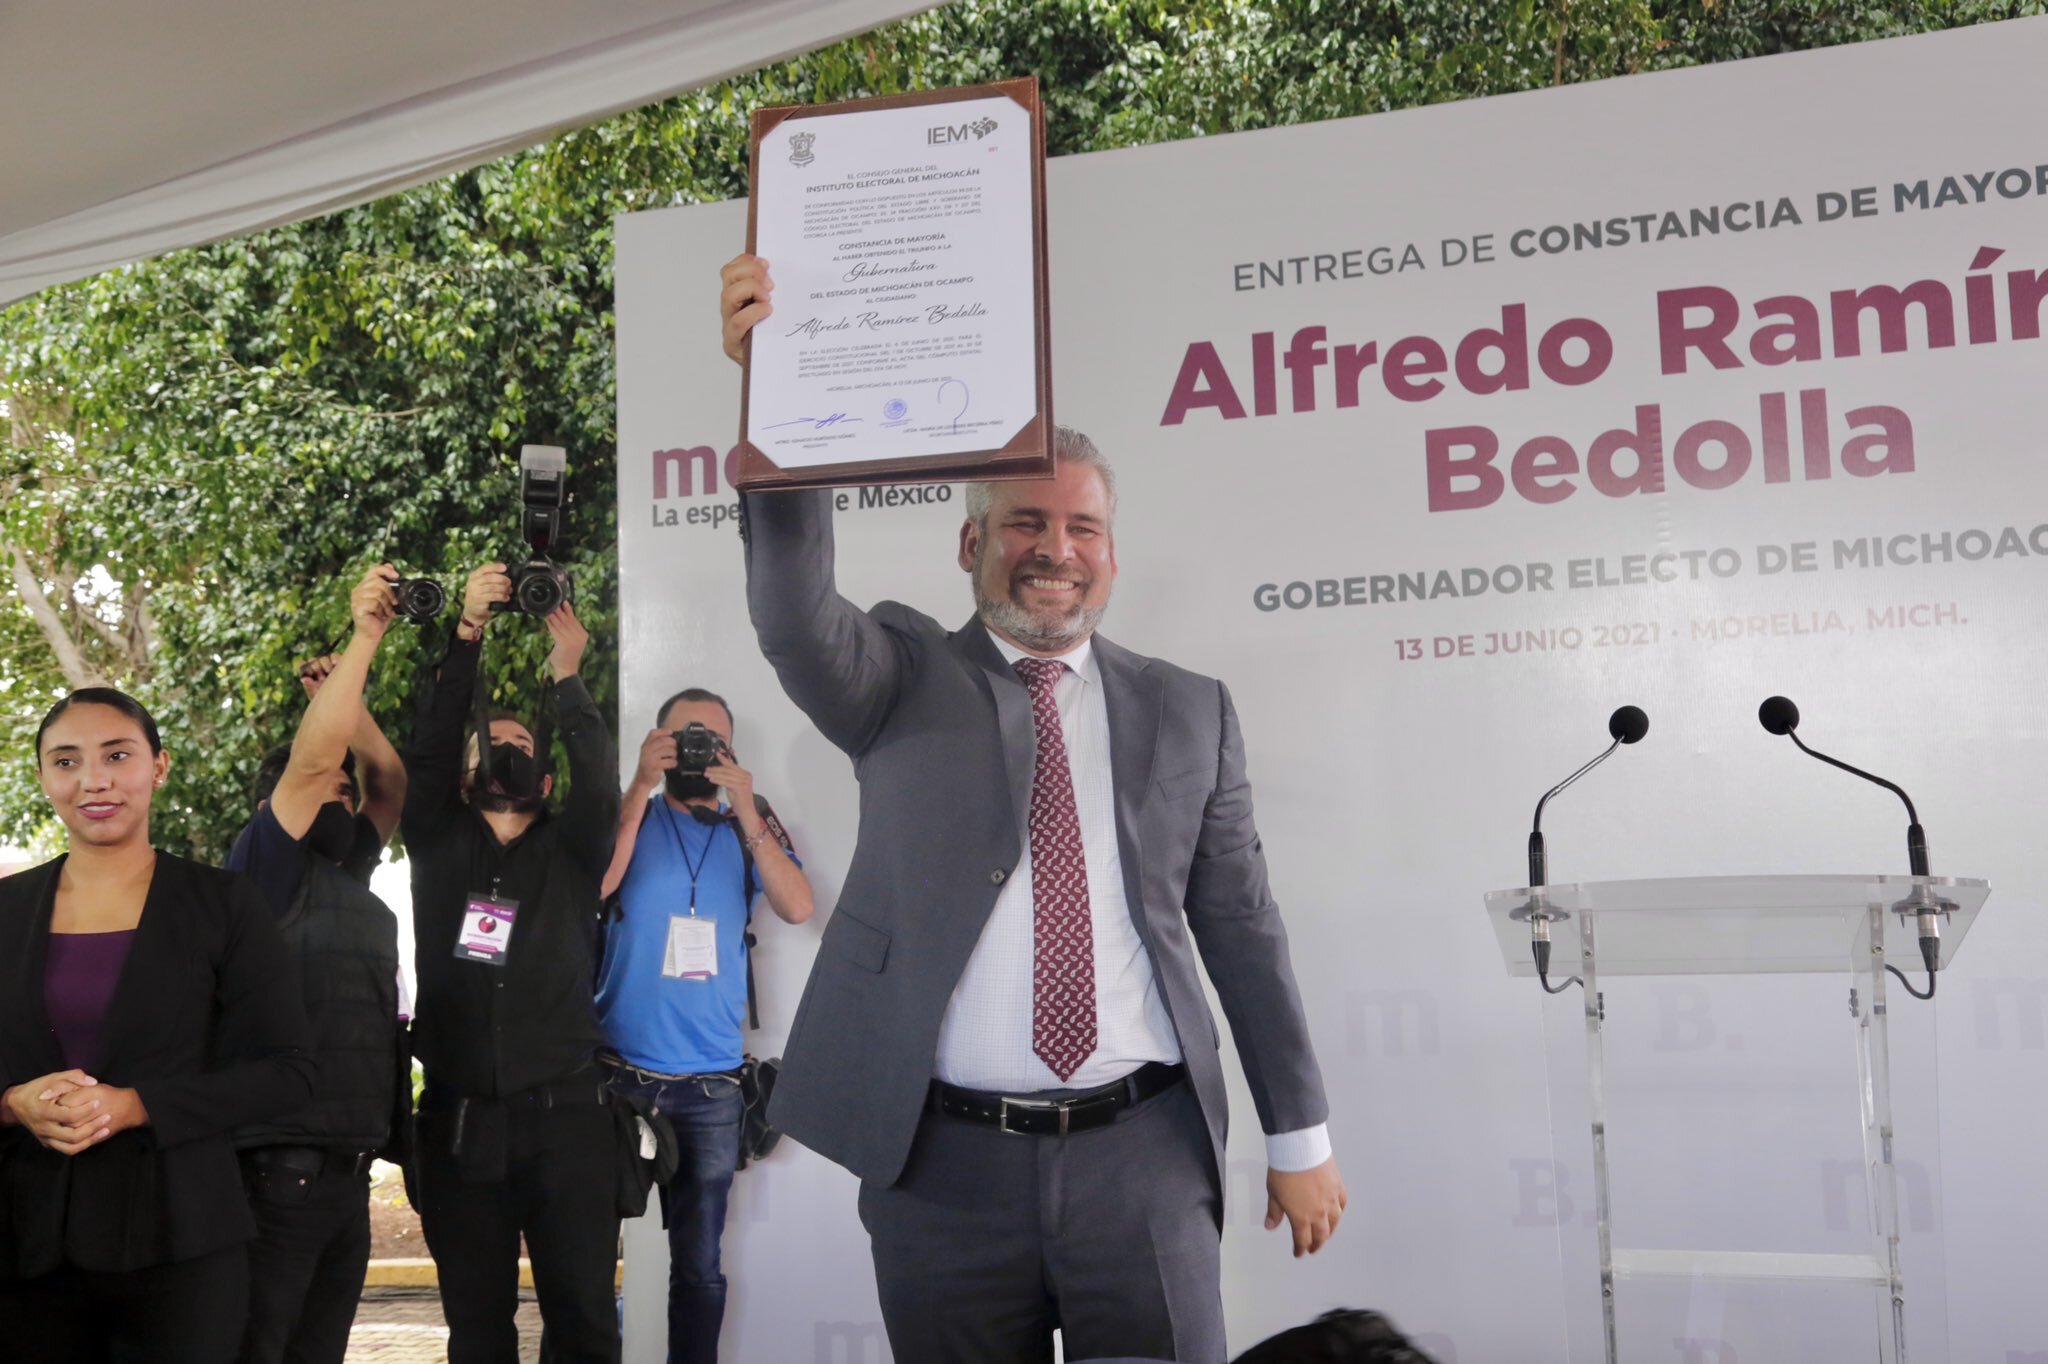 Alfredo Ramírez Bedolla recibió la constancia de mayoría que lo acredita como el gobernador electo de Michoacán (Foto: Twitter@AlfredoEsMorena)